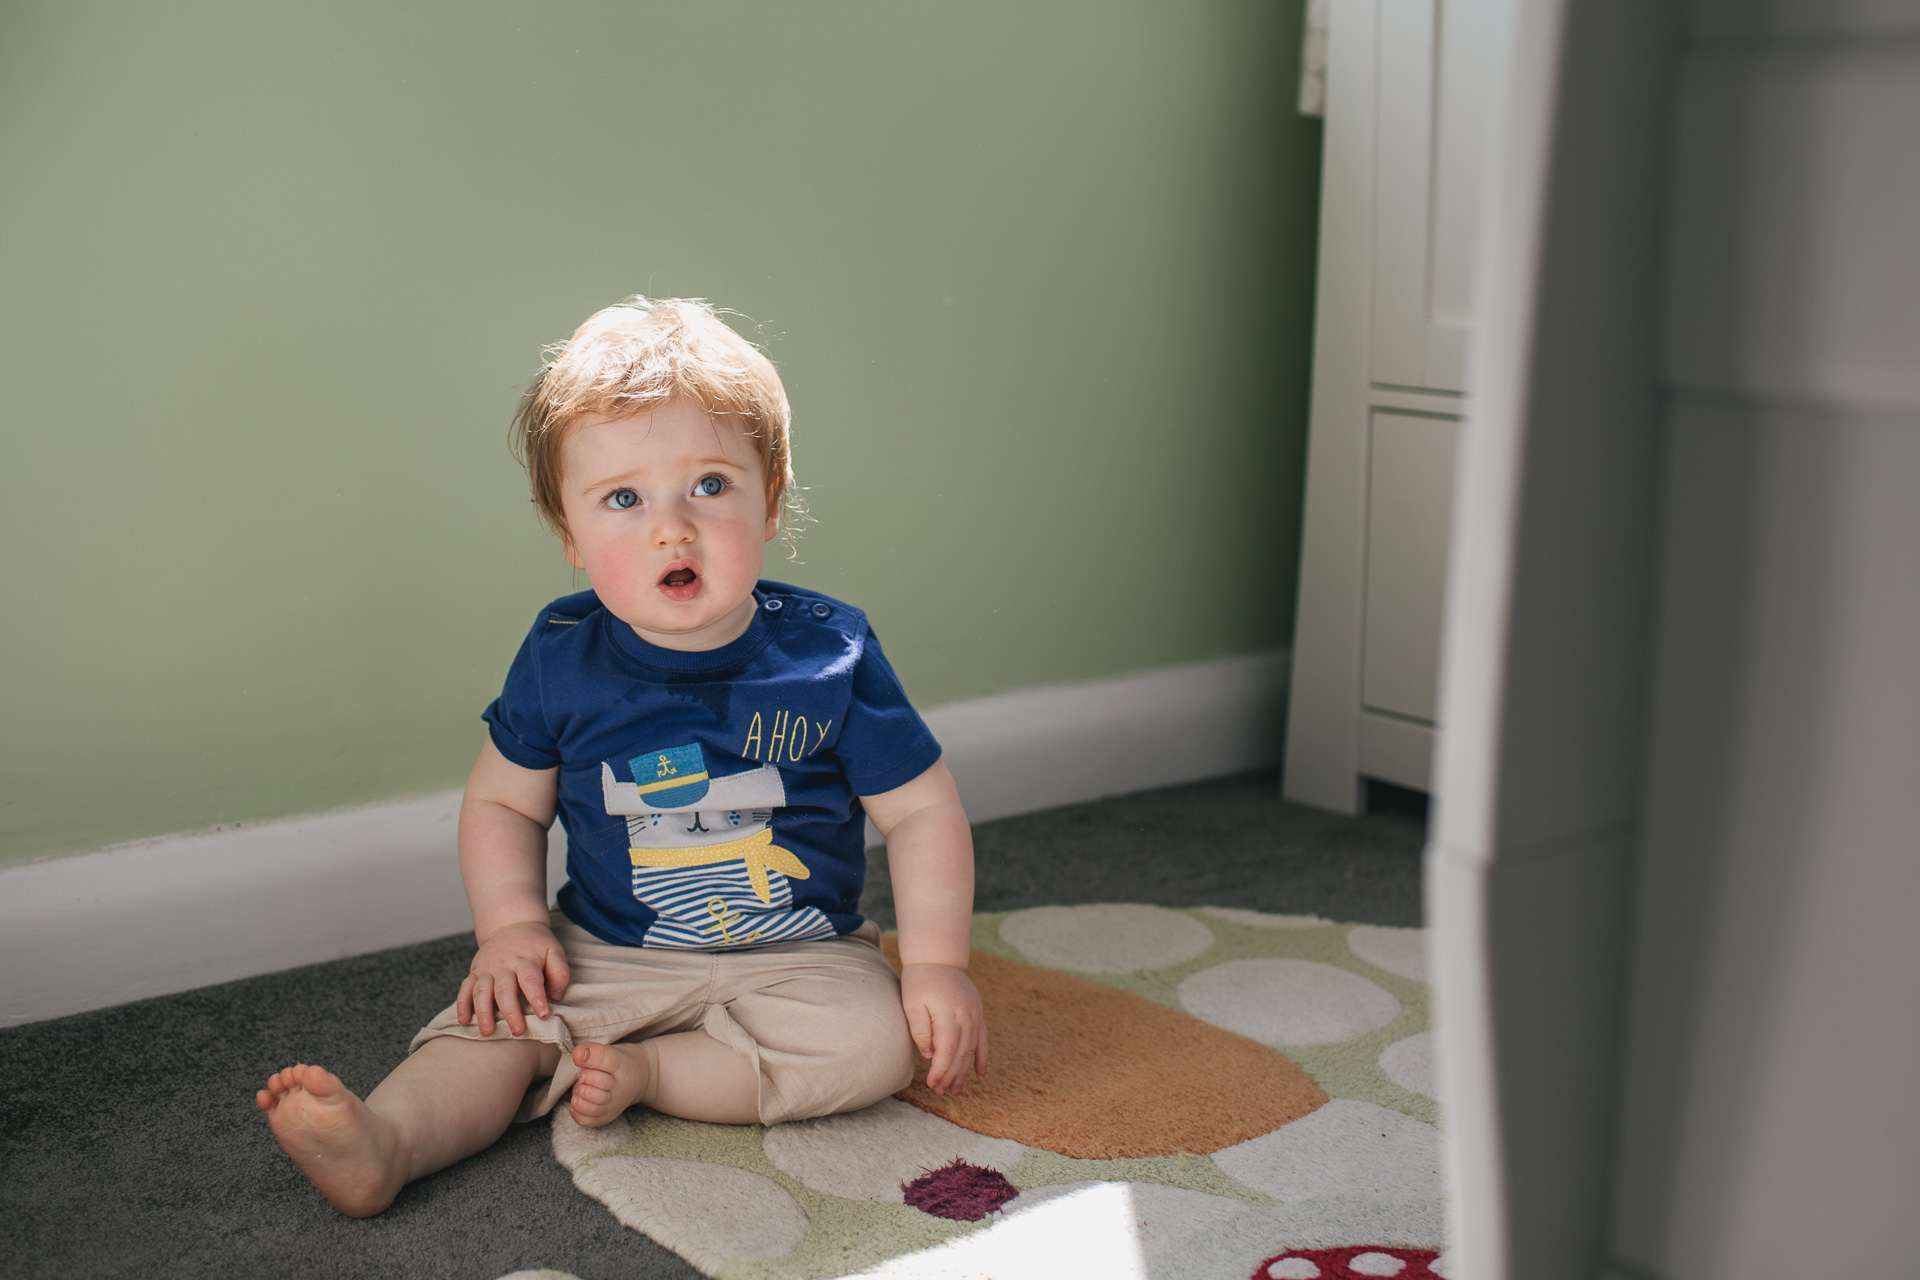 A toddler boy sitting in a nursery